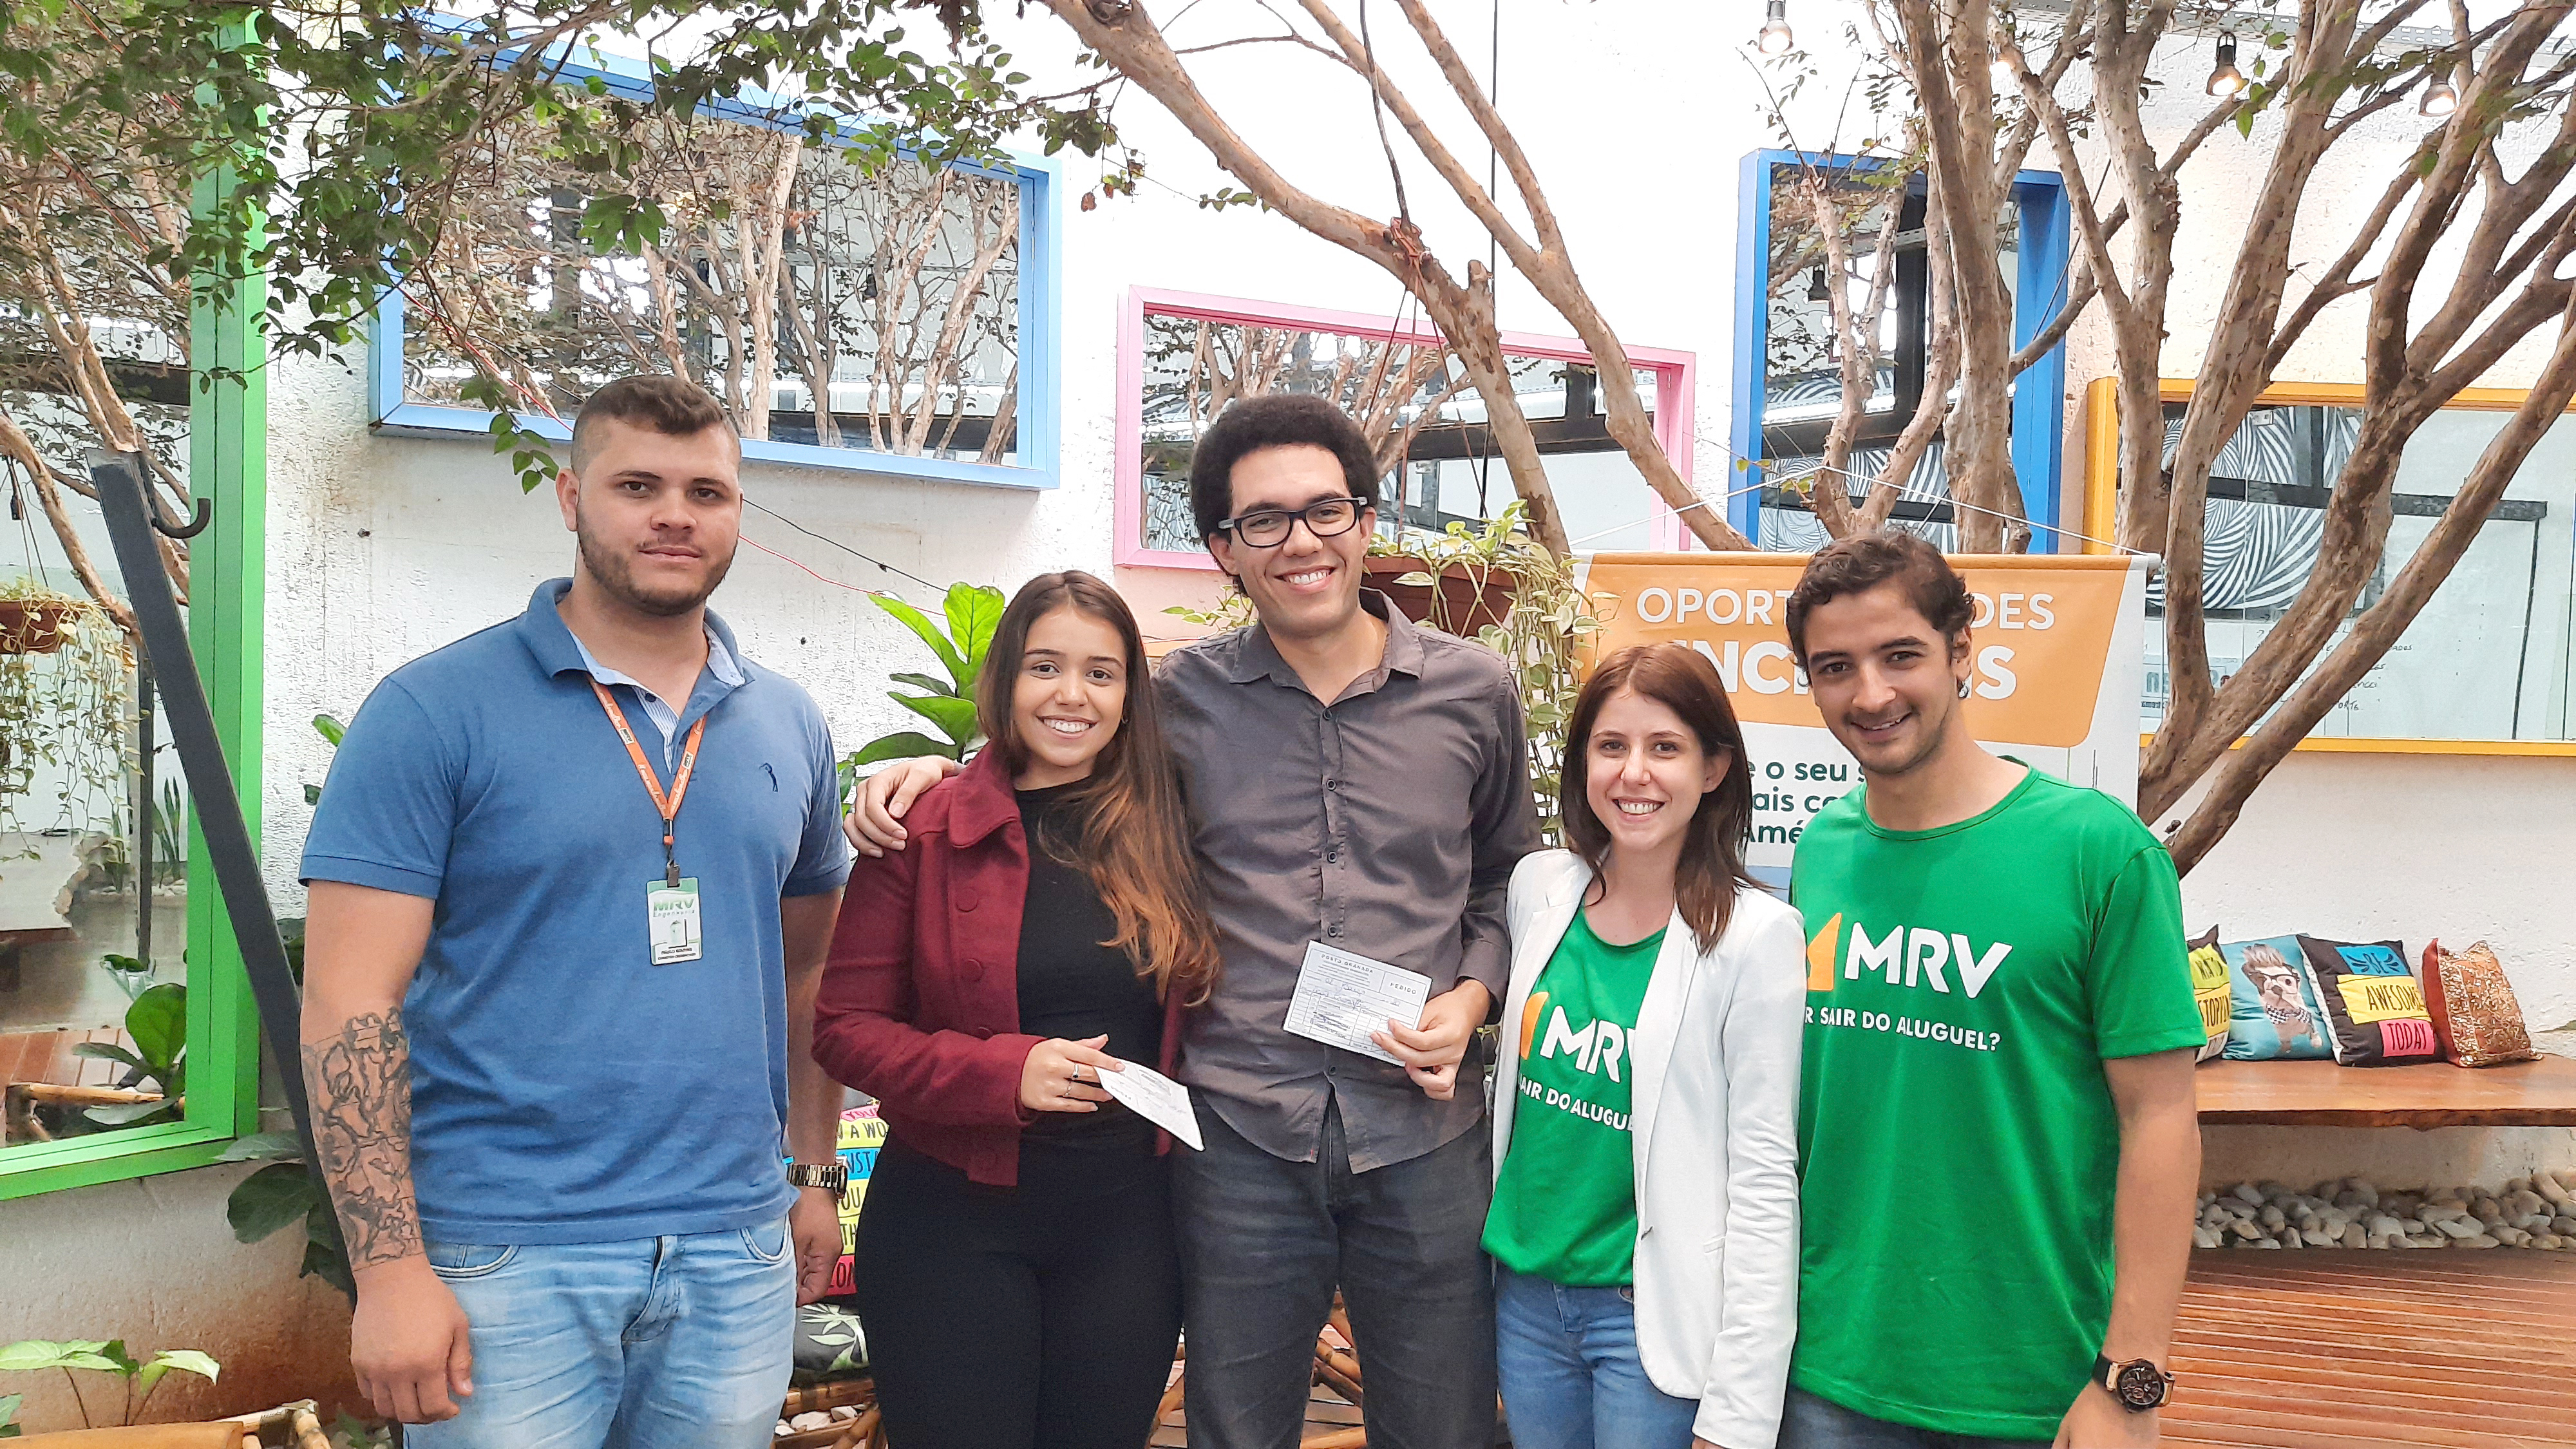 Brendha Vivas e Pedro Ventura, ganhadores do sorteio promovido pela MRV em ação na CroSoften, com equipe de consultores da construtora.